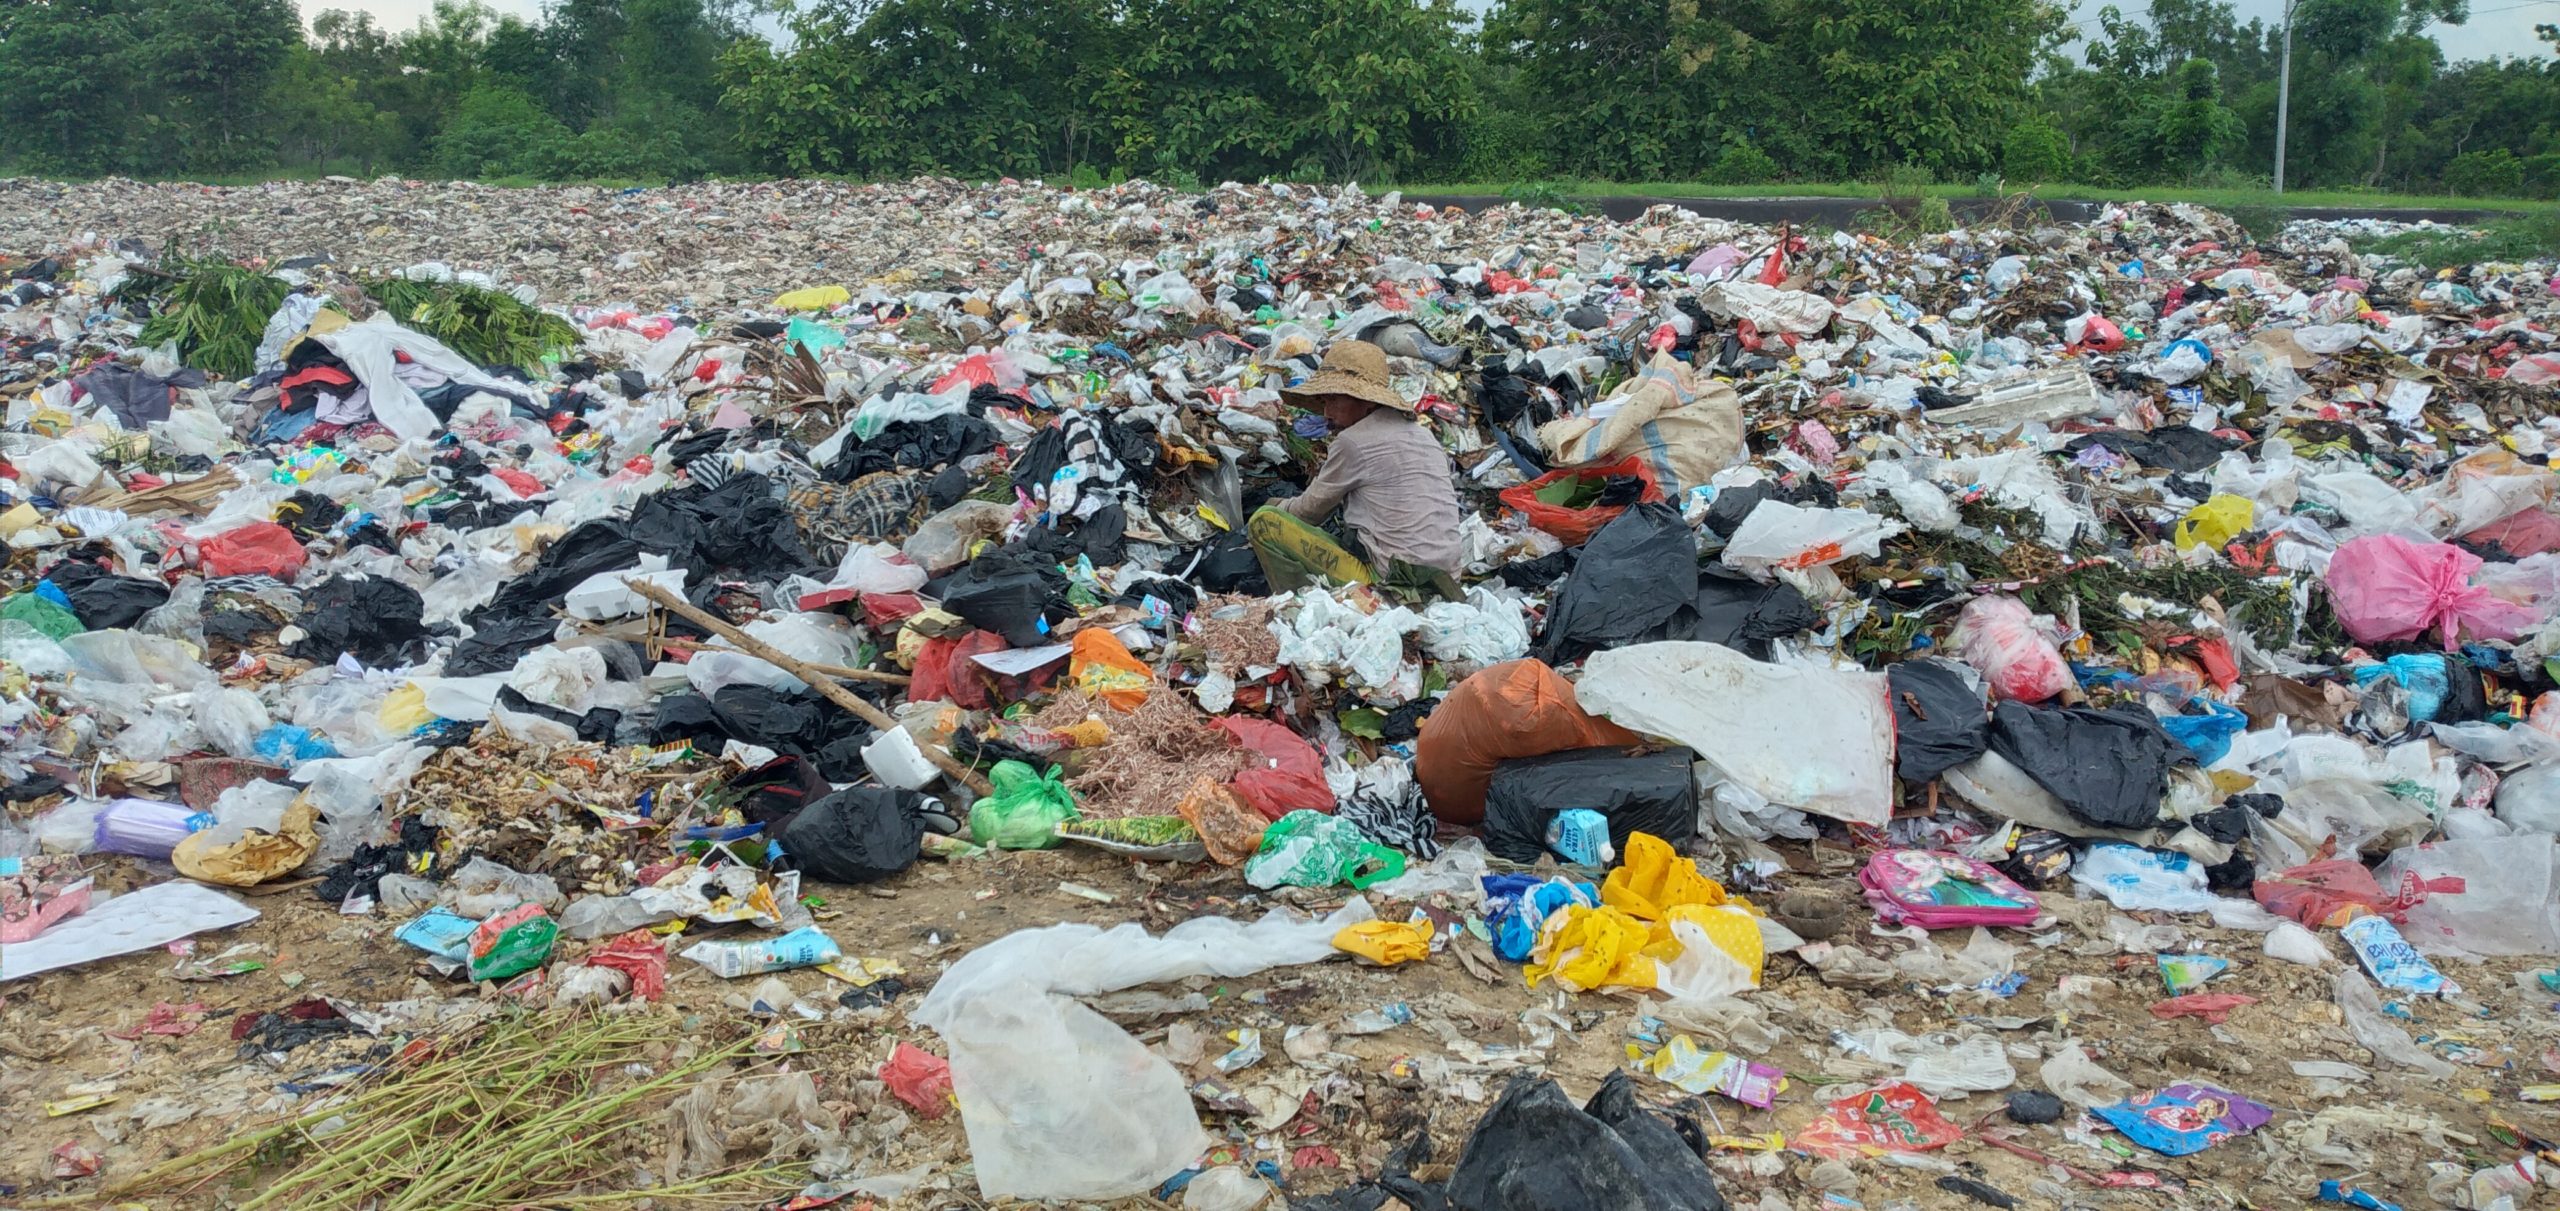 Sampah, salah satu masalah lingkungan di Indonesia. Foto: Moh Tamimi/ Mongabay Indonesia